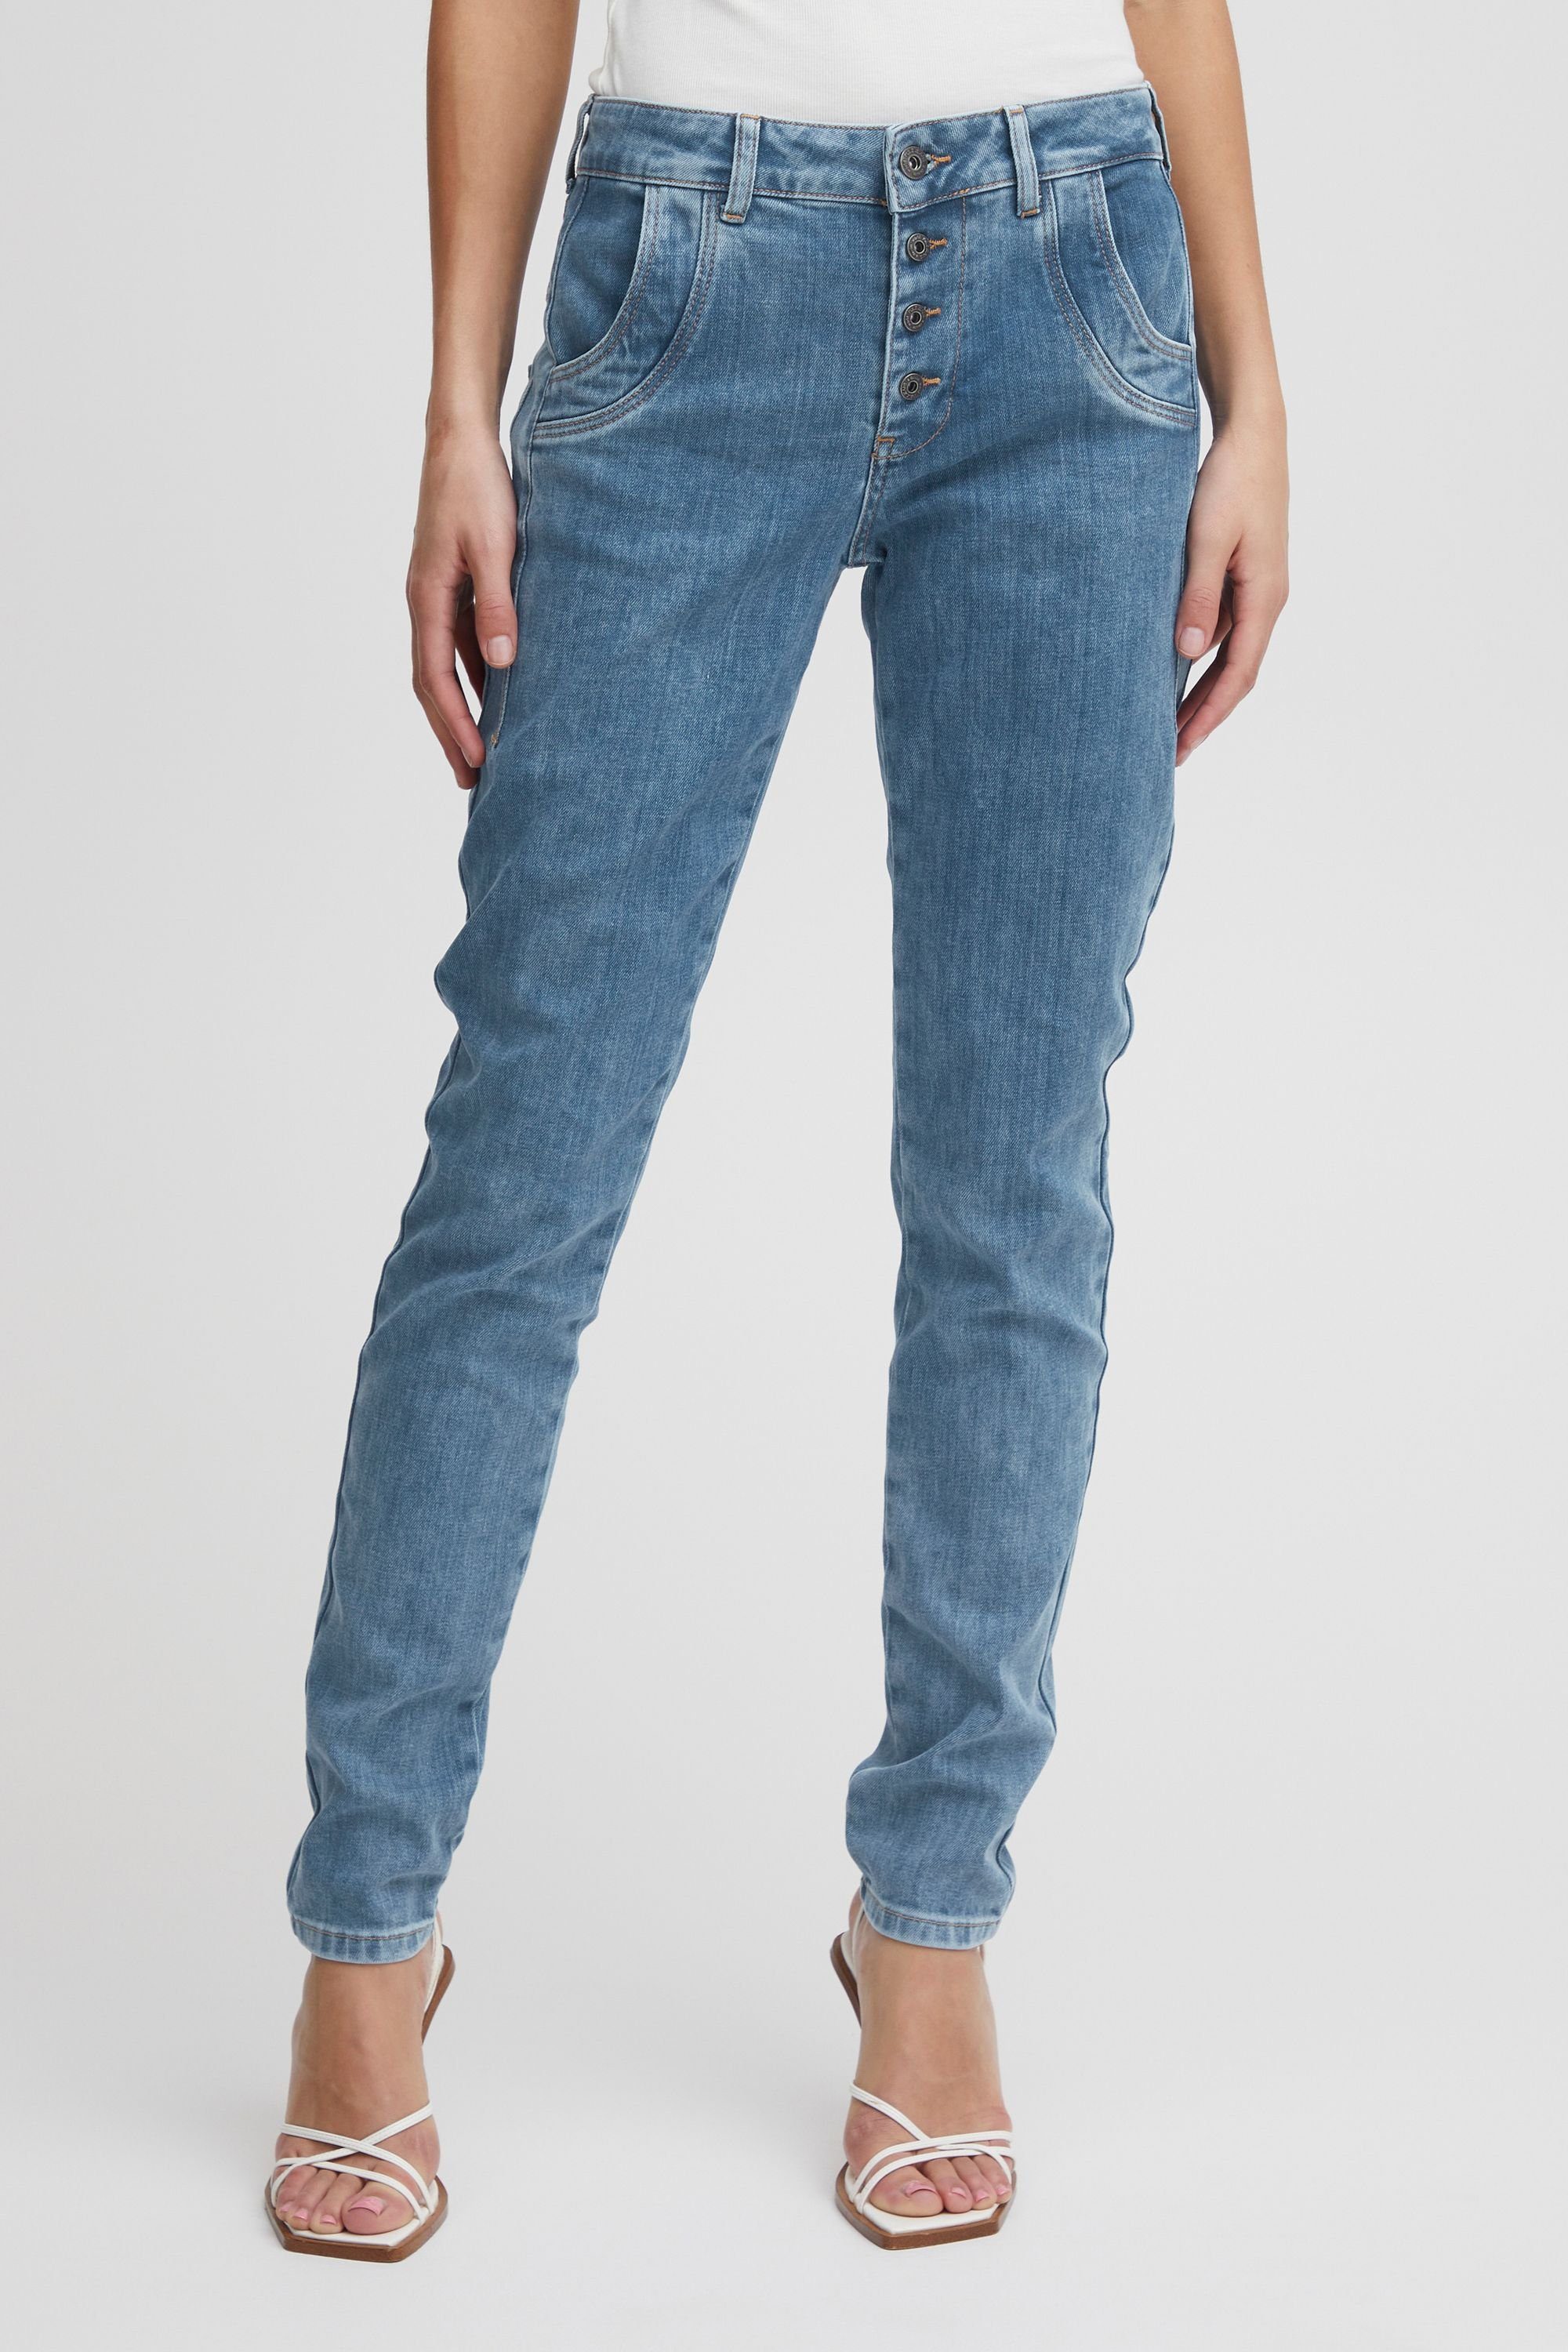 Pulz Jeans 5-Pocket-Jeans PZMELINA Loose Jeans Skinny Leg Light Blue Denim (200008)